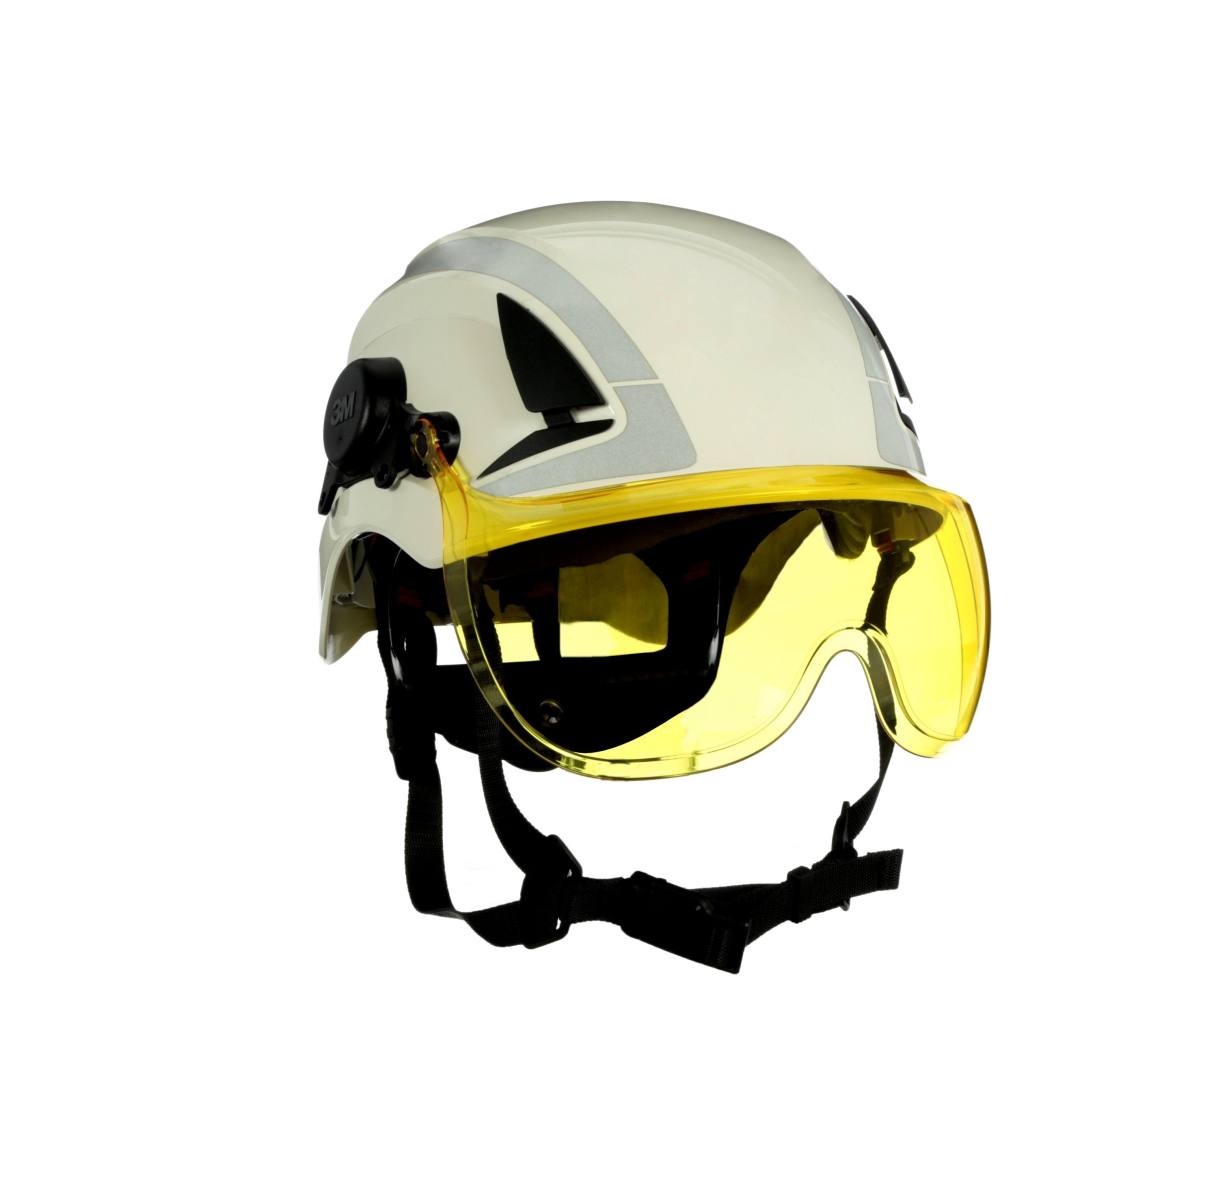 Visera corta 3M X5-SV03-CE para cascos de seguridad X5000 y X5500, amarilla, revestimiento antivaho y antirrayas, policarbonato